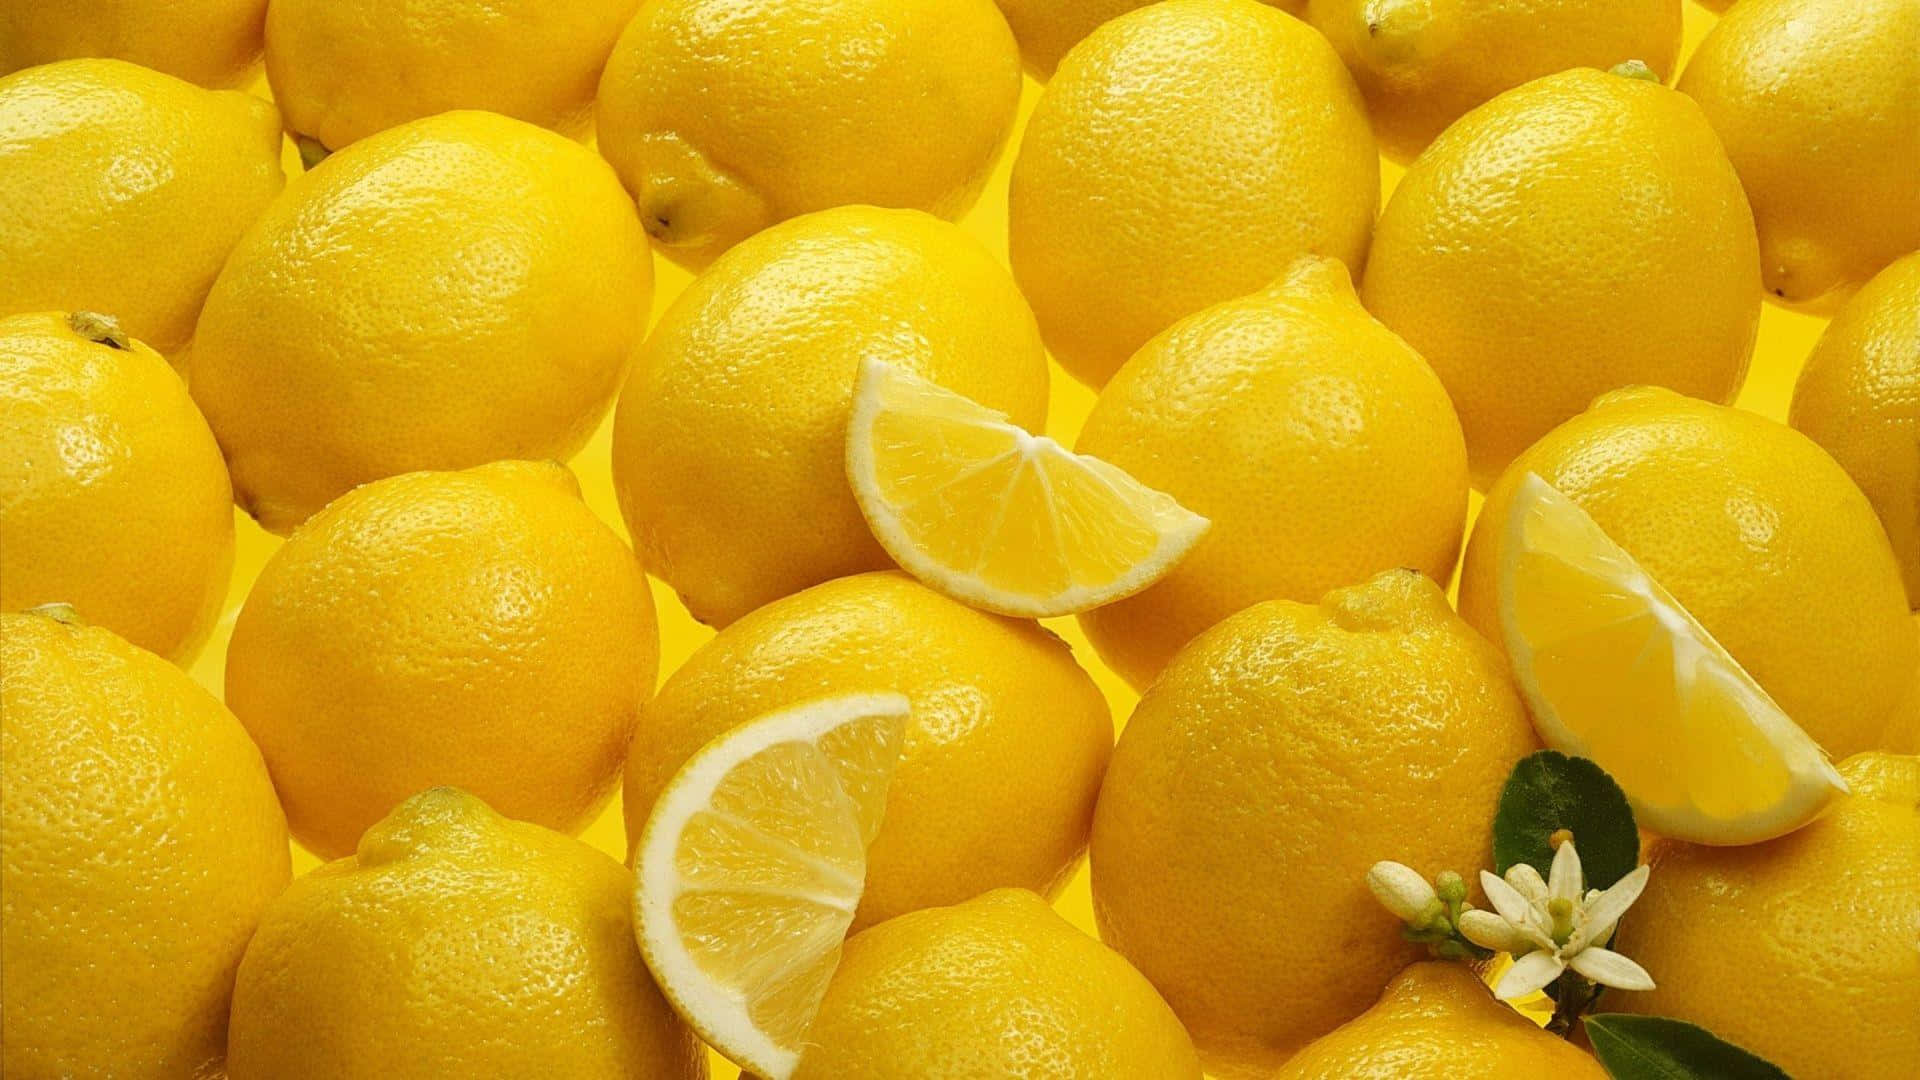 Imágenesde Limones.